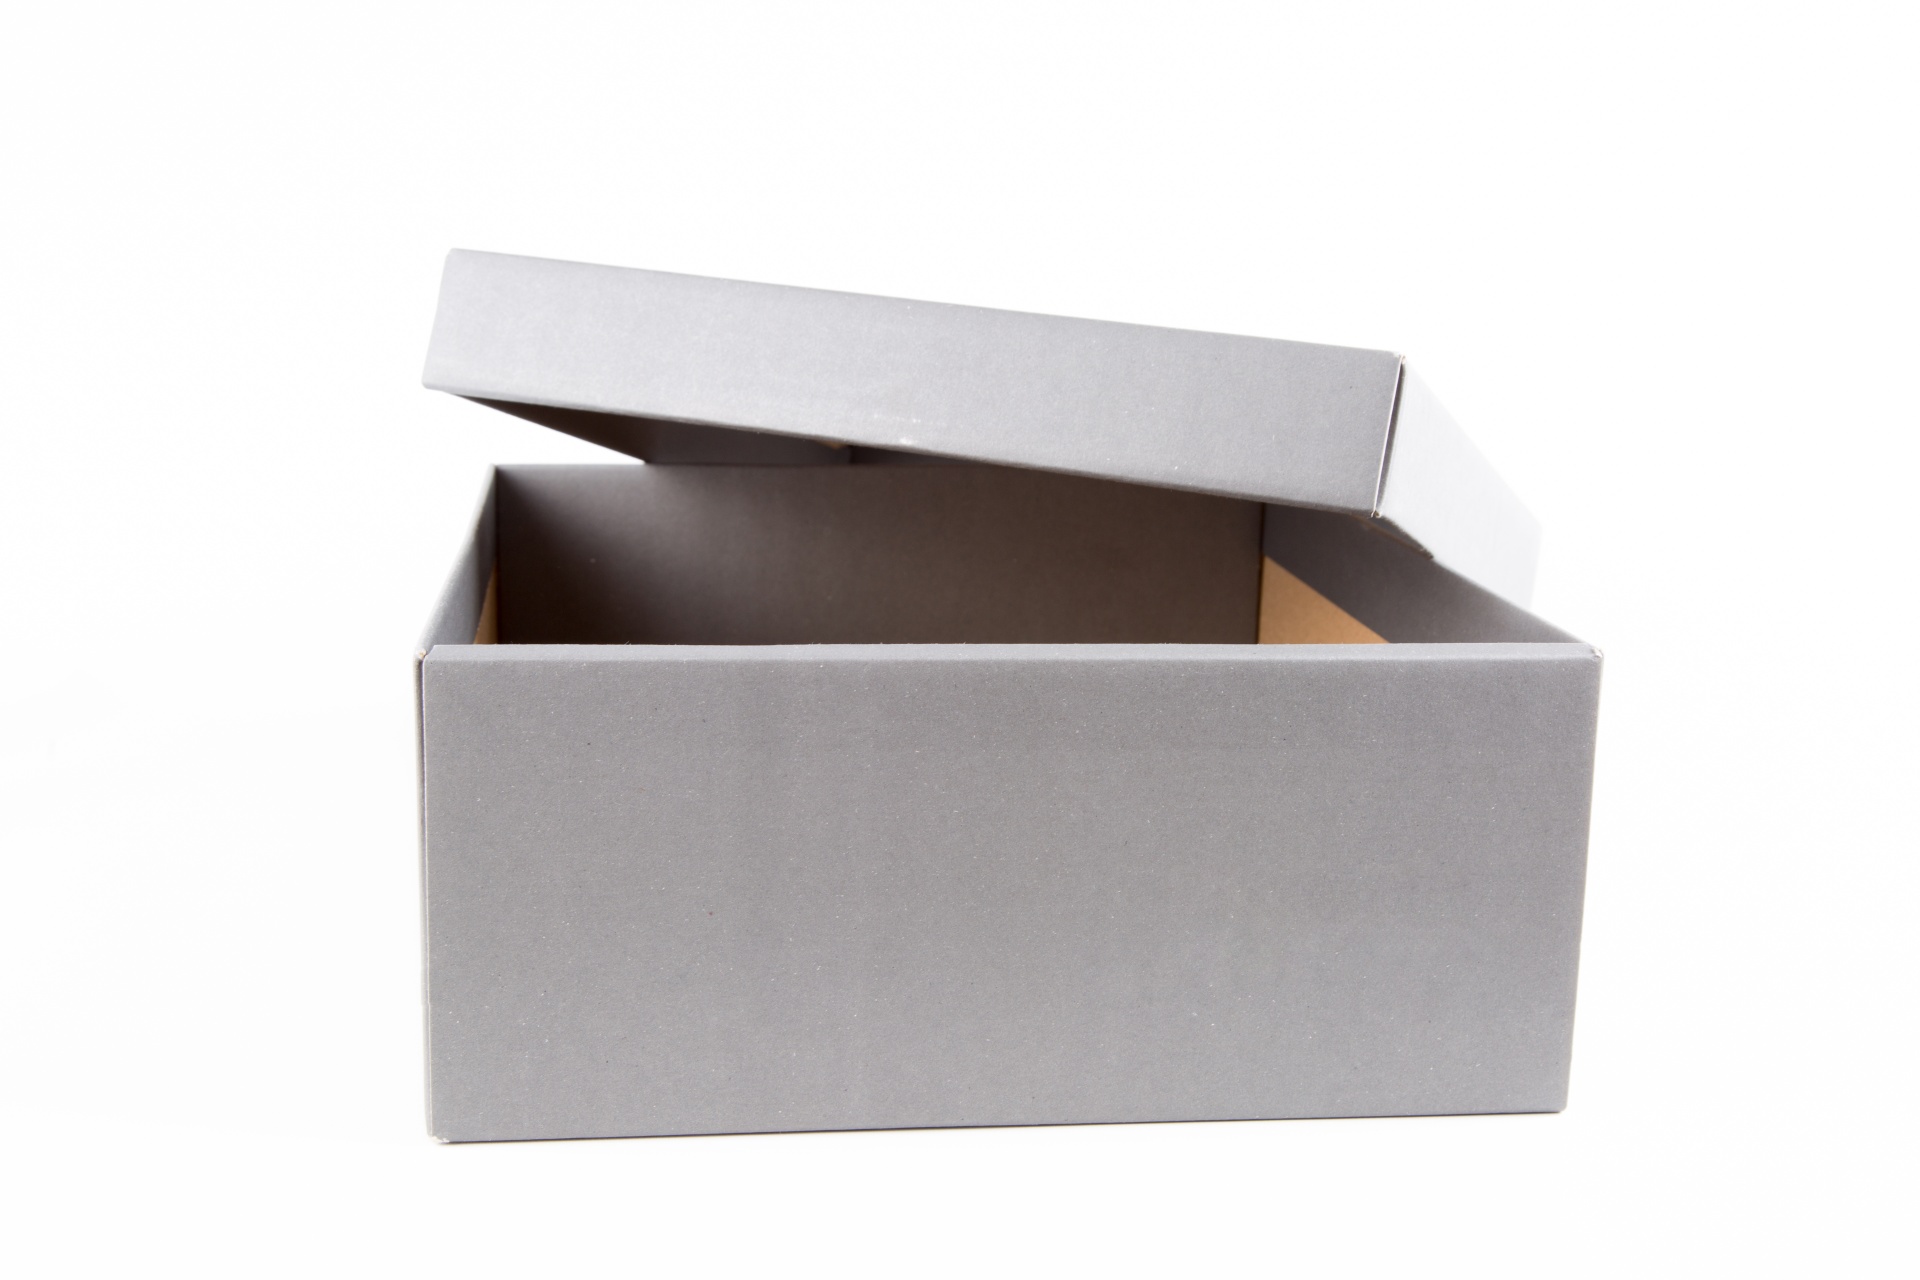 A box.^[[Image](https://www.publicdomainpictures.net/en/view-image.php?image=169480&picture=carton-box) is in the public domain]